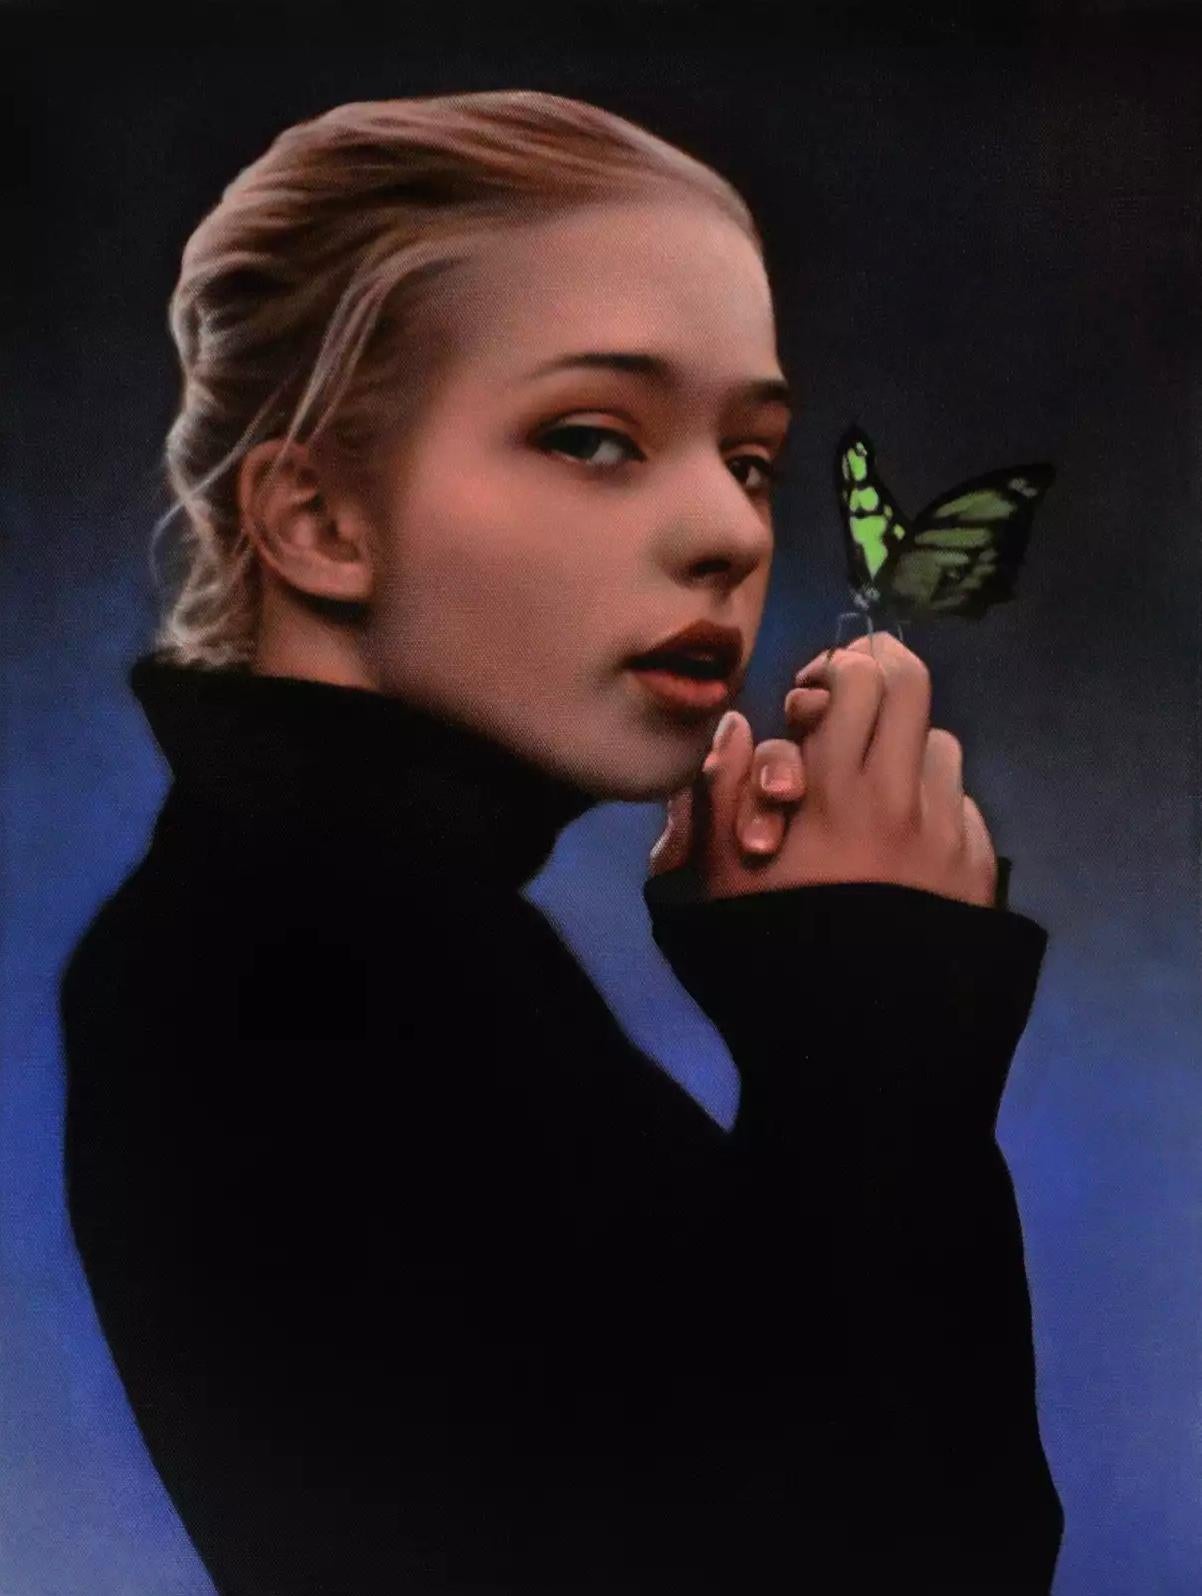 Dieses 24 x 17 Zoll große Ölgemälde auf Leinwand des britischen Künstlers Michael Hlousek-Nagle trägt den Titel "The Hidden Language". Das Werk zeigt das Porträt einer jungen Frau und einen Schmetterling. Es handelt sich um ein Porträt in halber